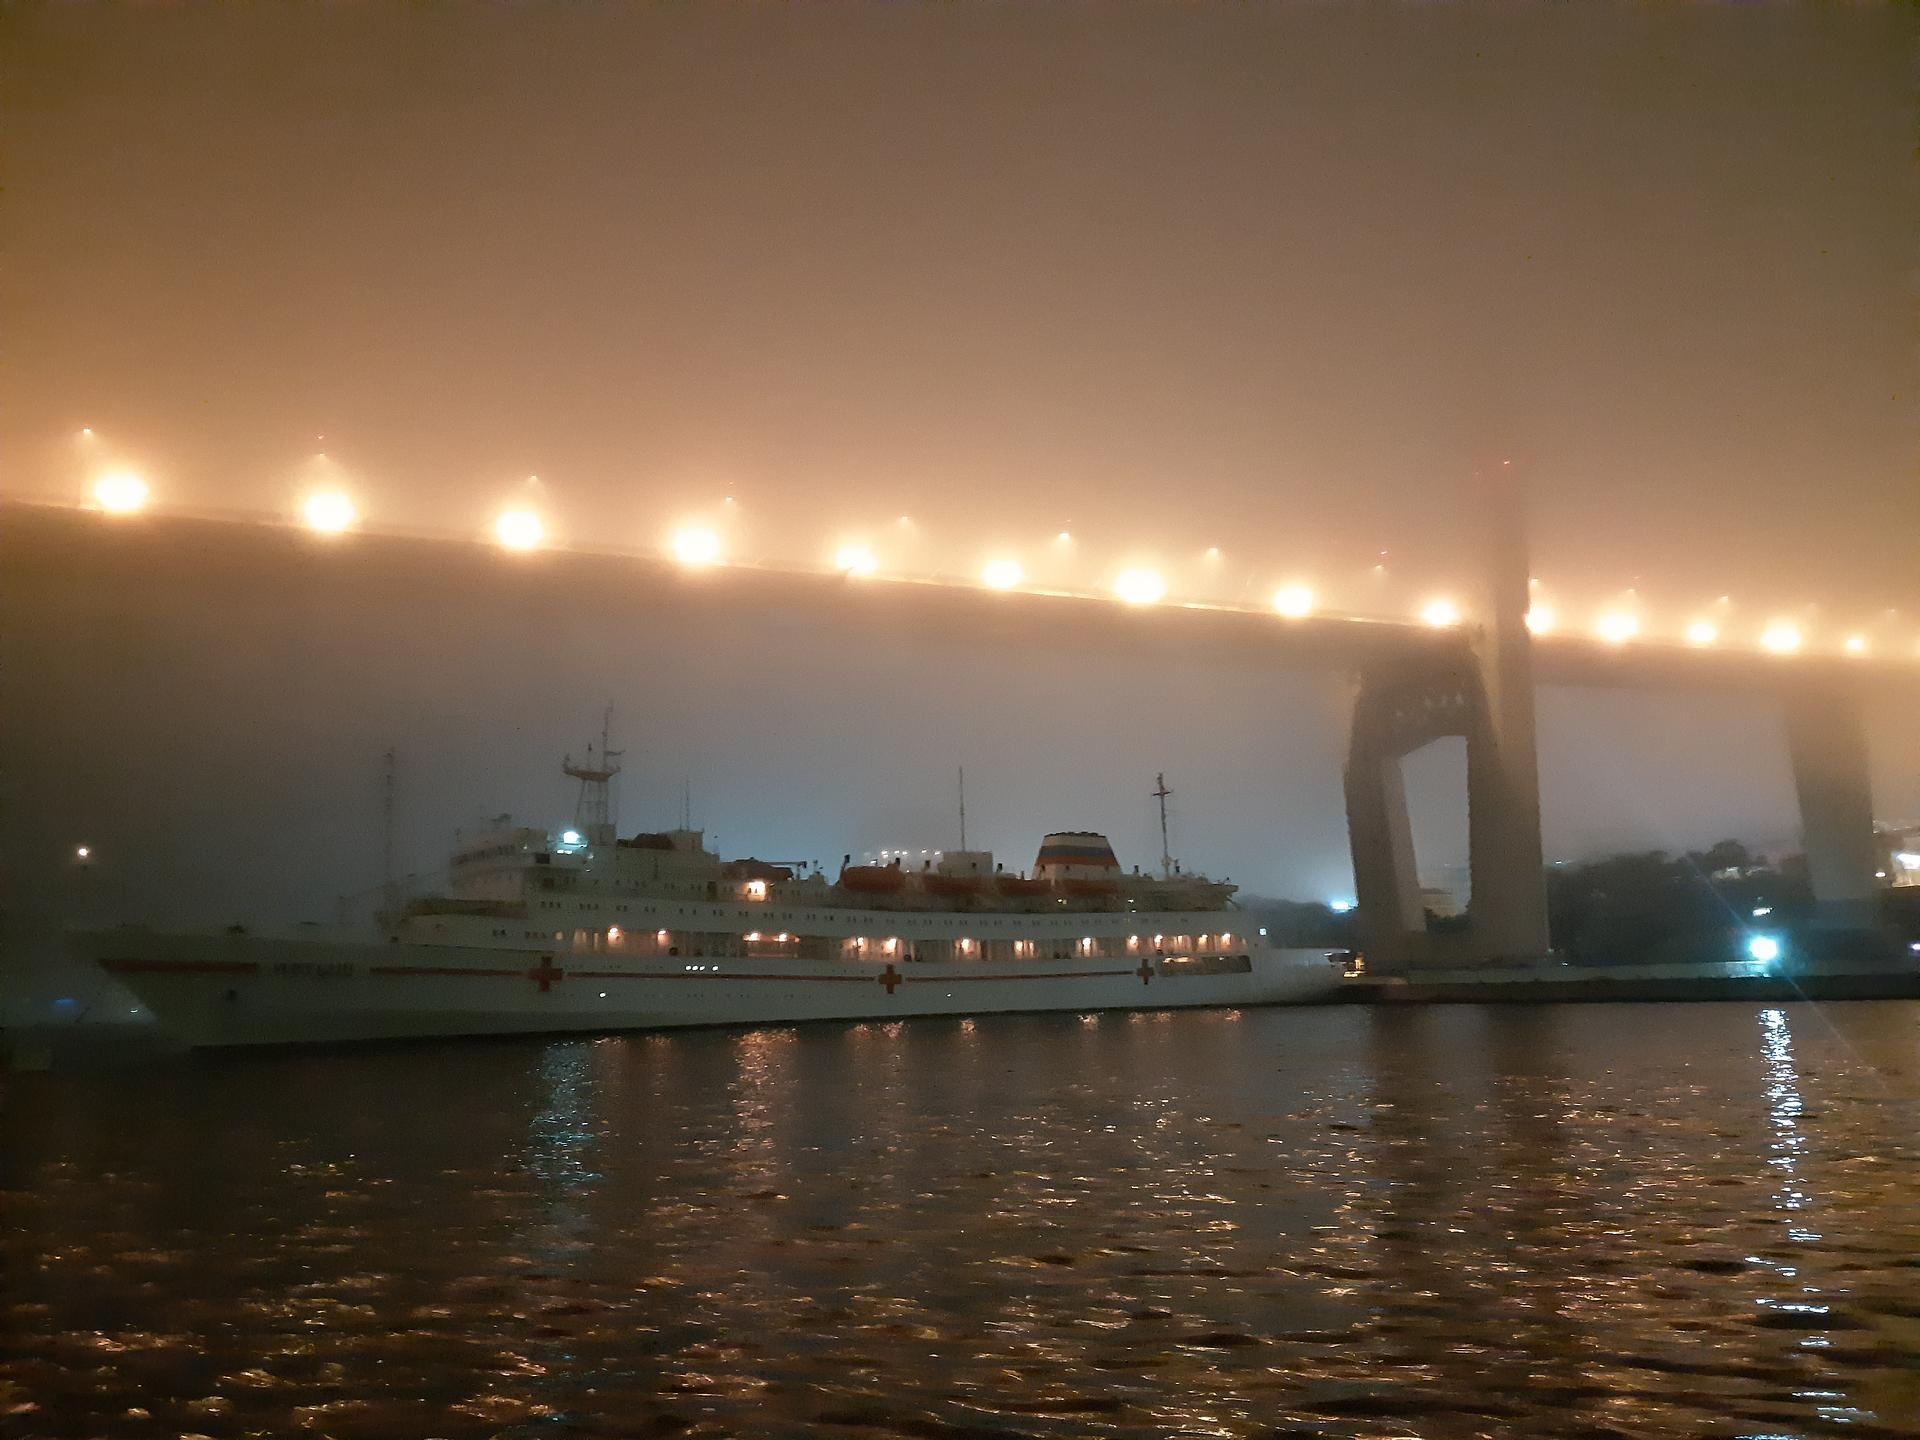 Вечерняя водная прогулка на катере по бухте "Золотой Рог" г. Владивосток.